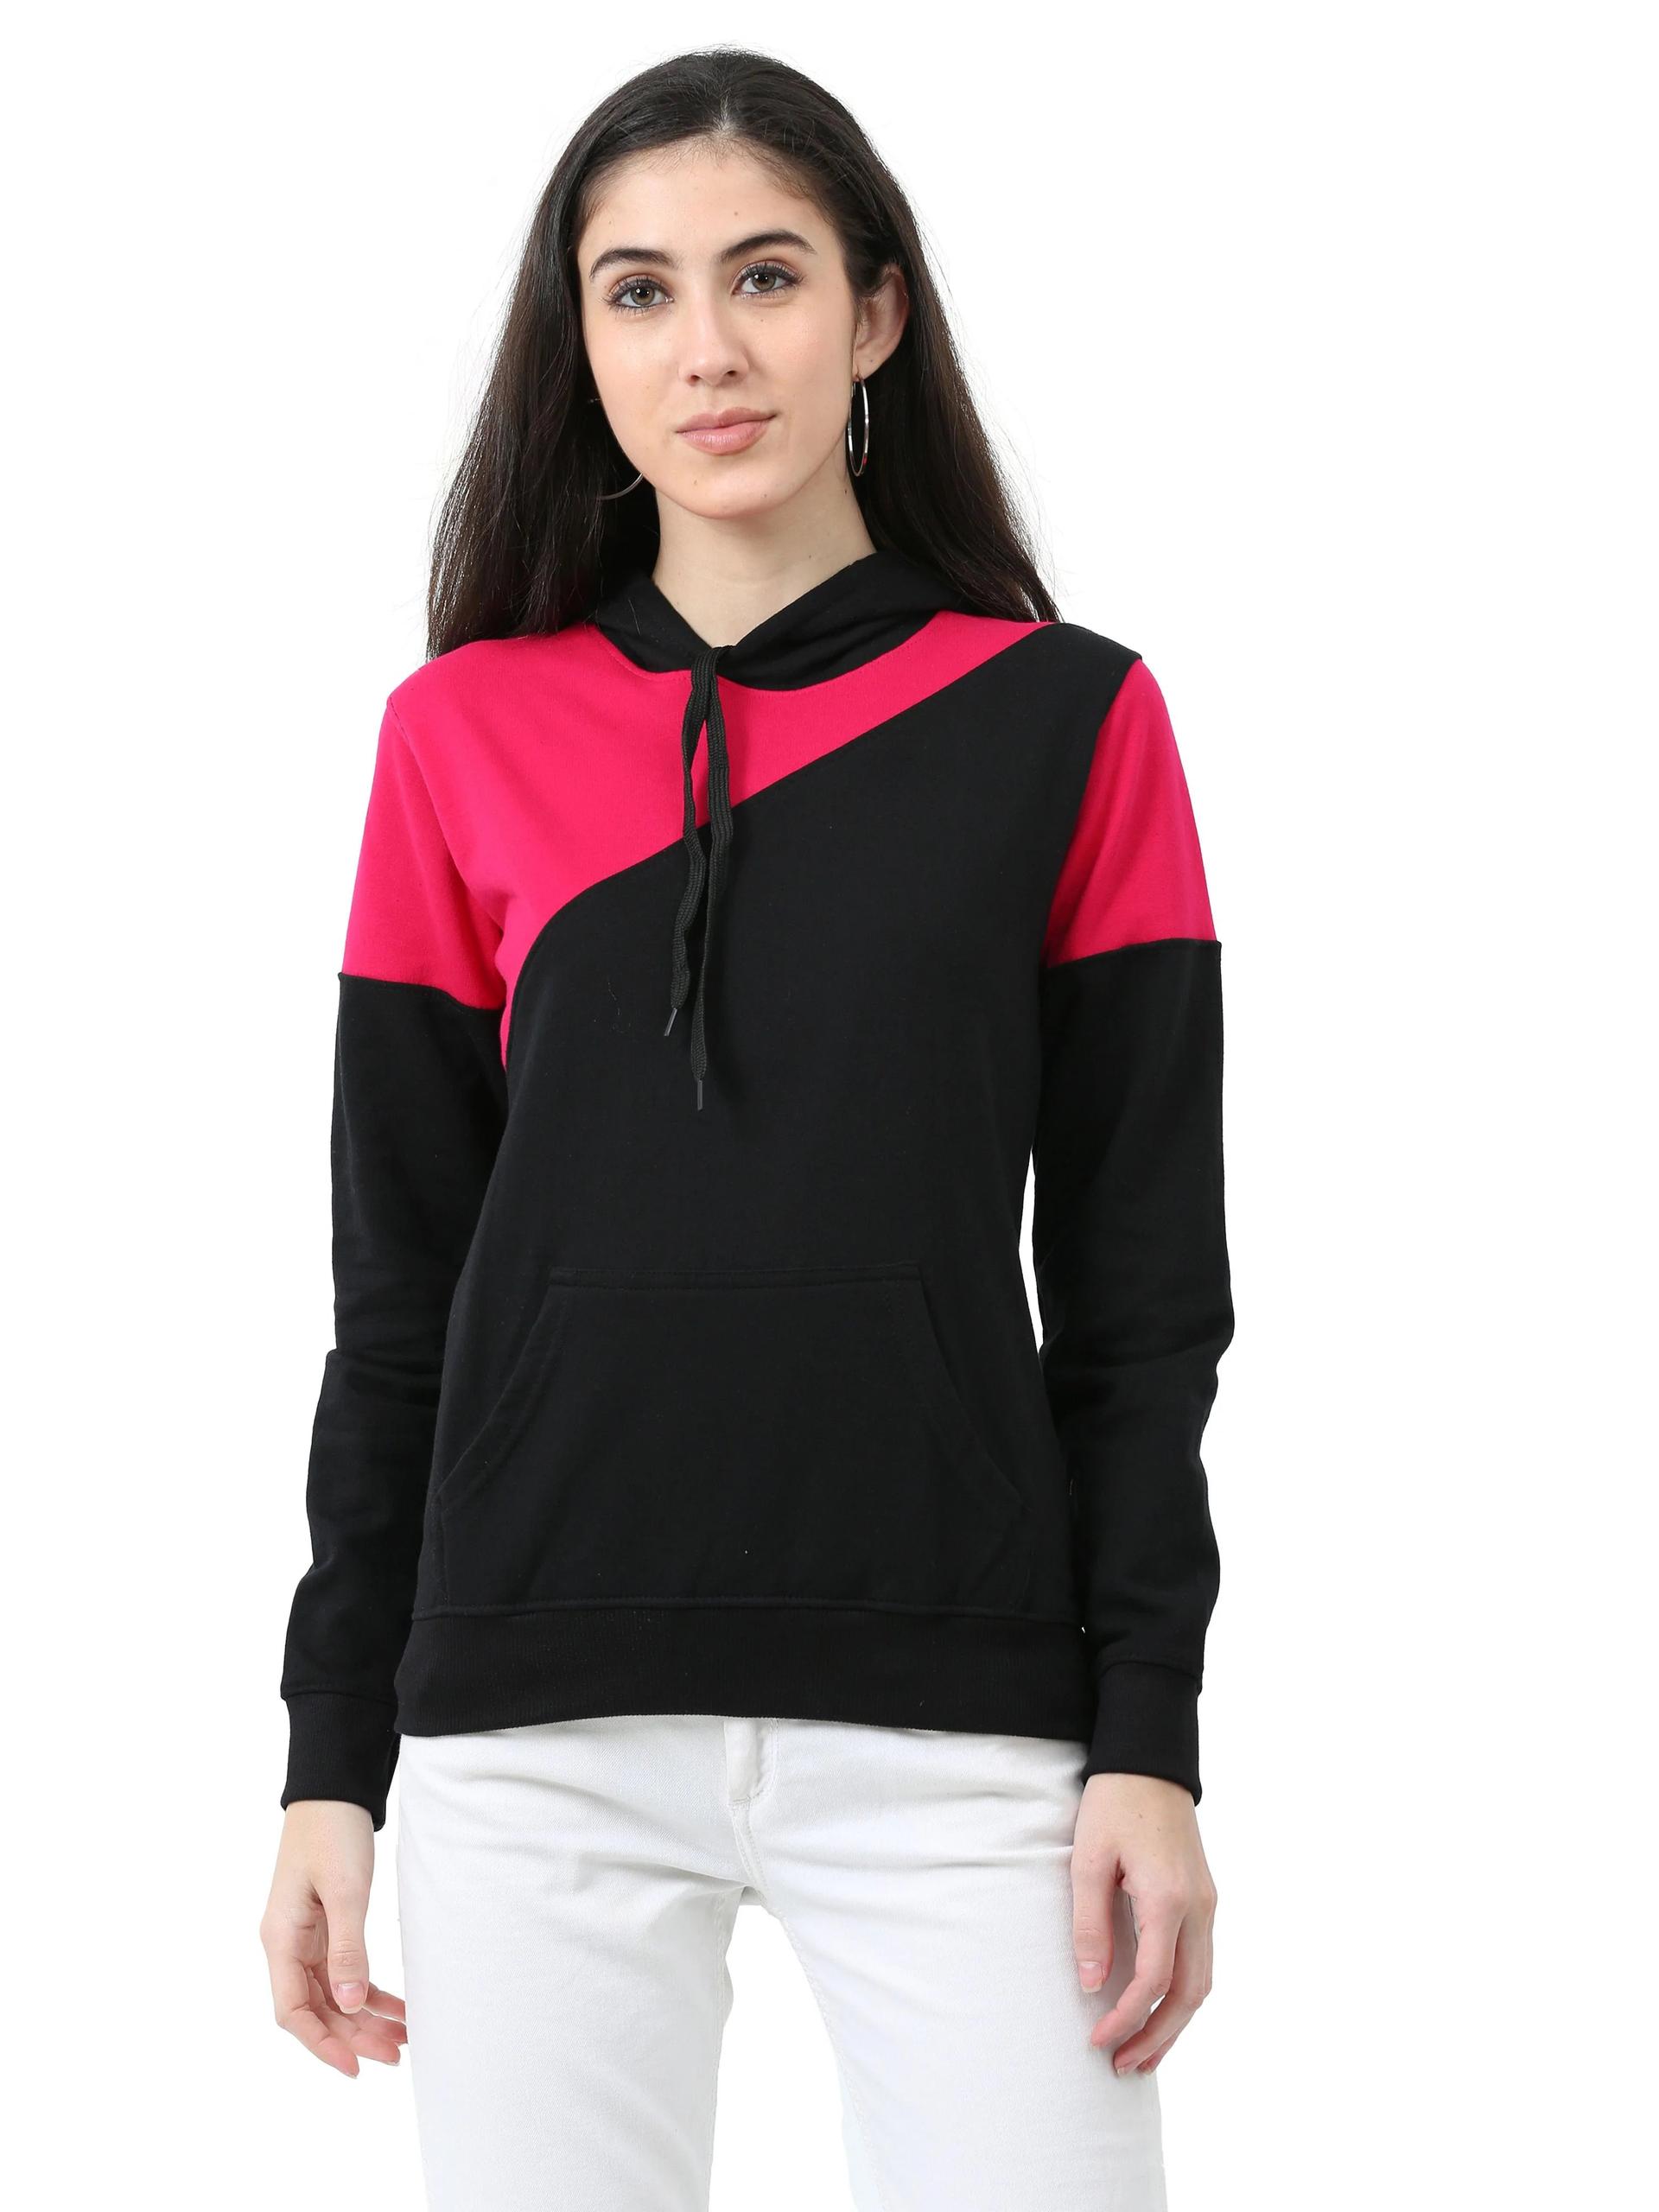 women's cotton color block  sweatshirt hoodies